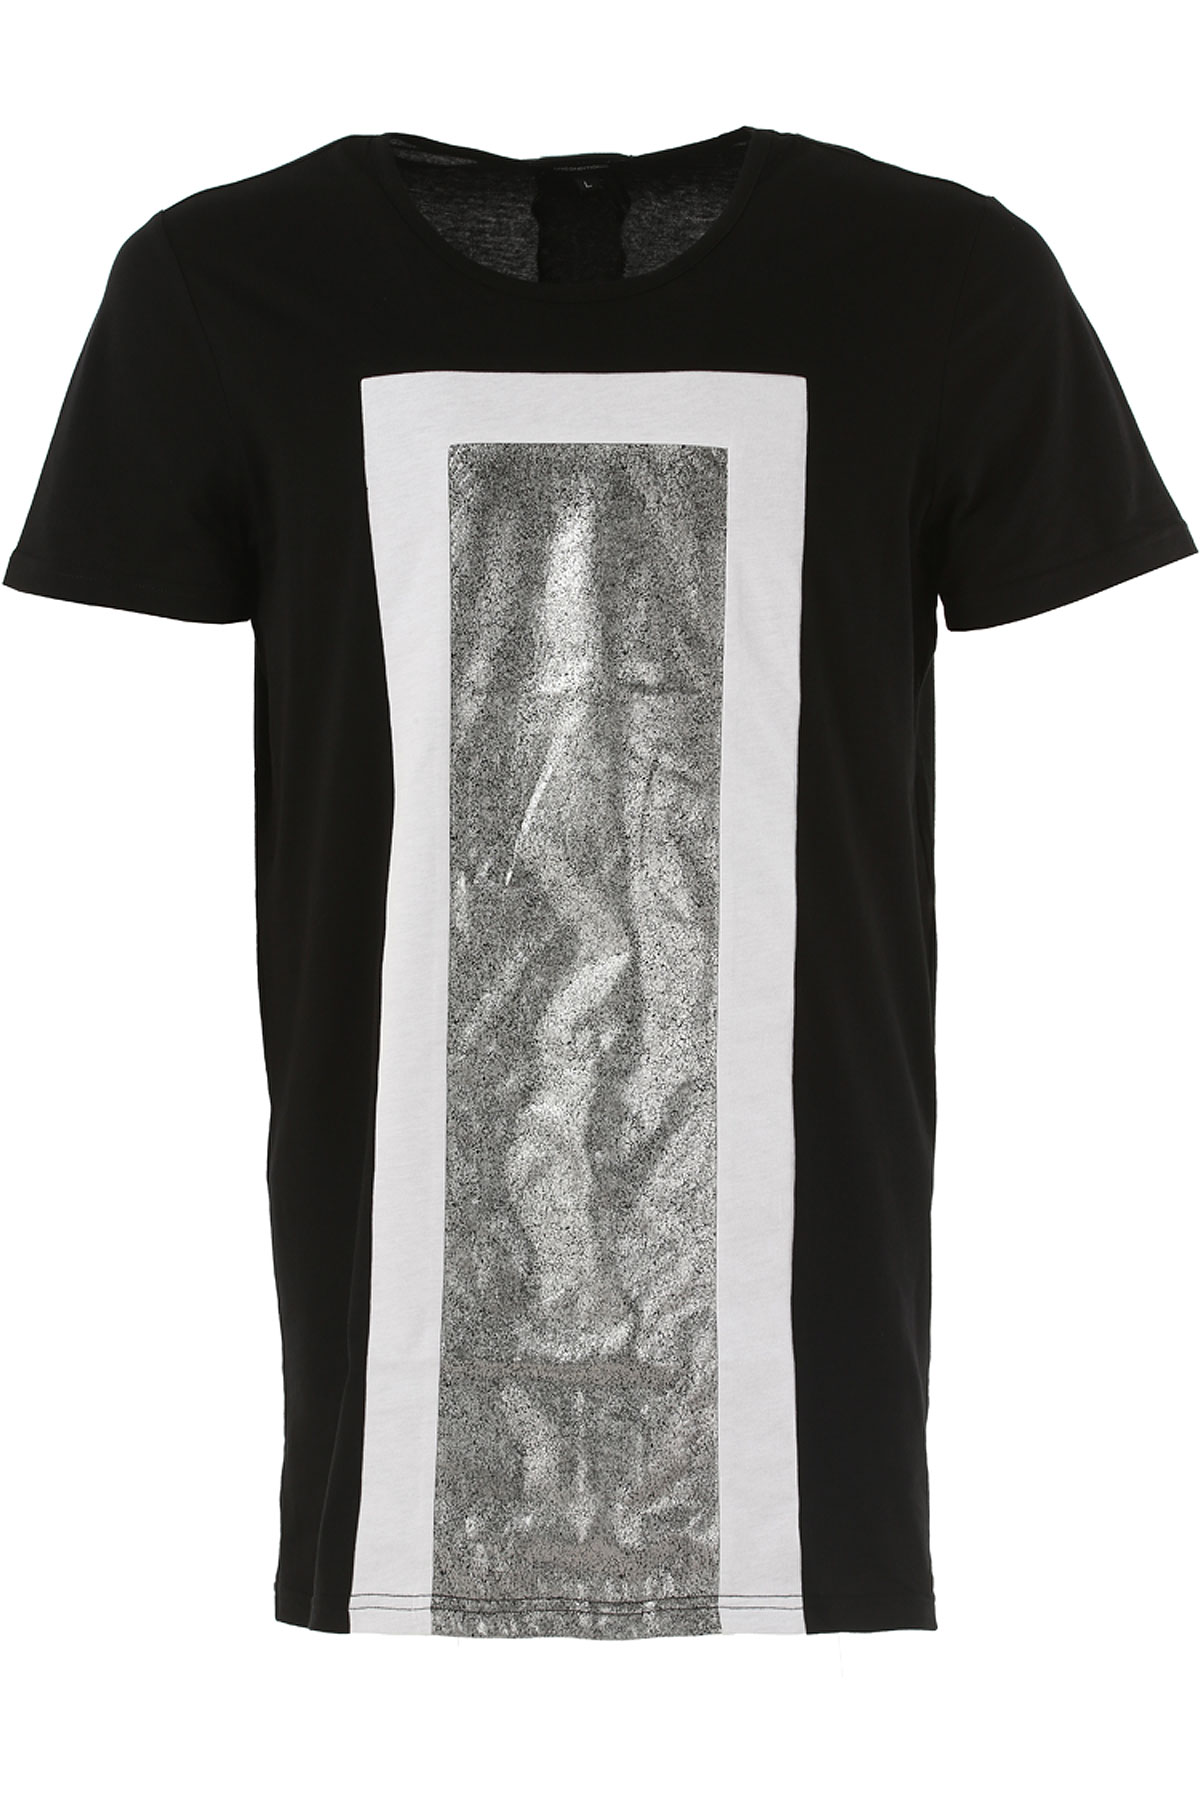 Unconditional T-shirt Homme , Noir, Coton, 2017, L XL